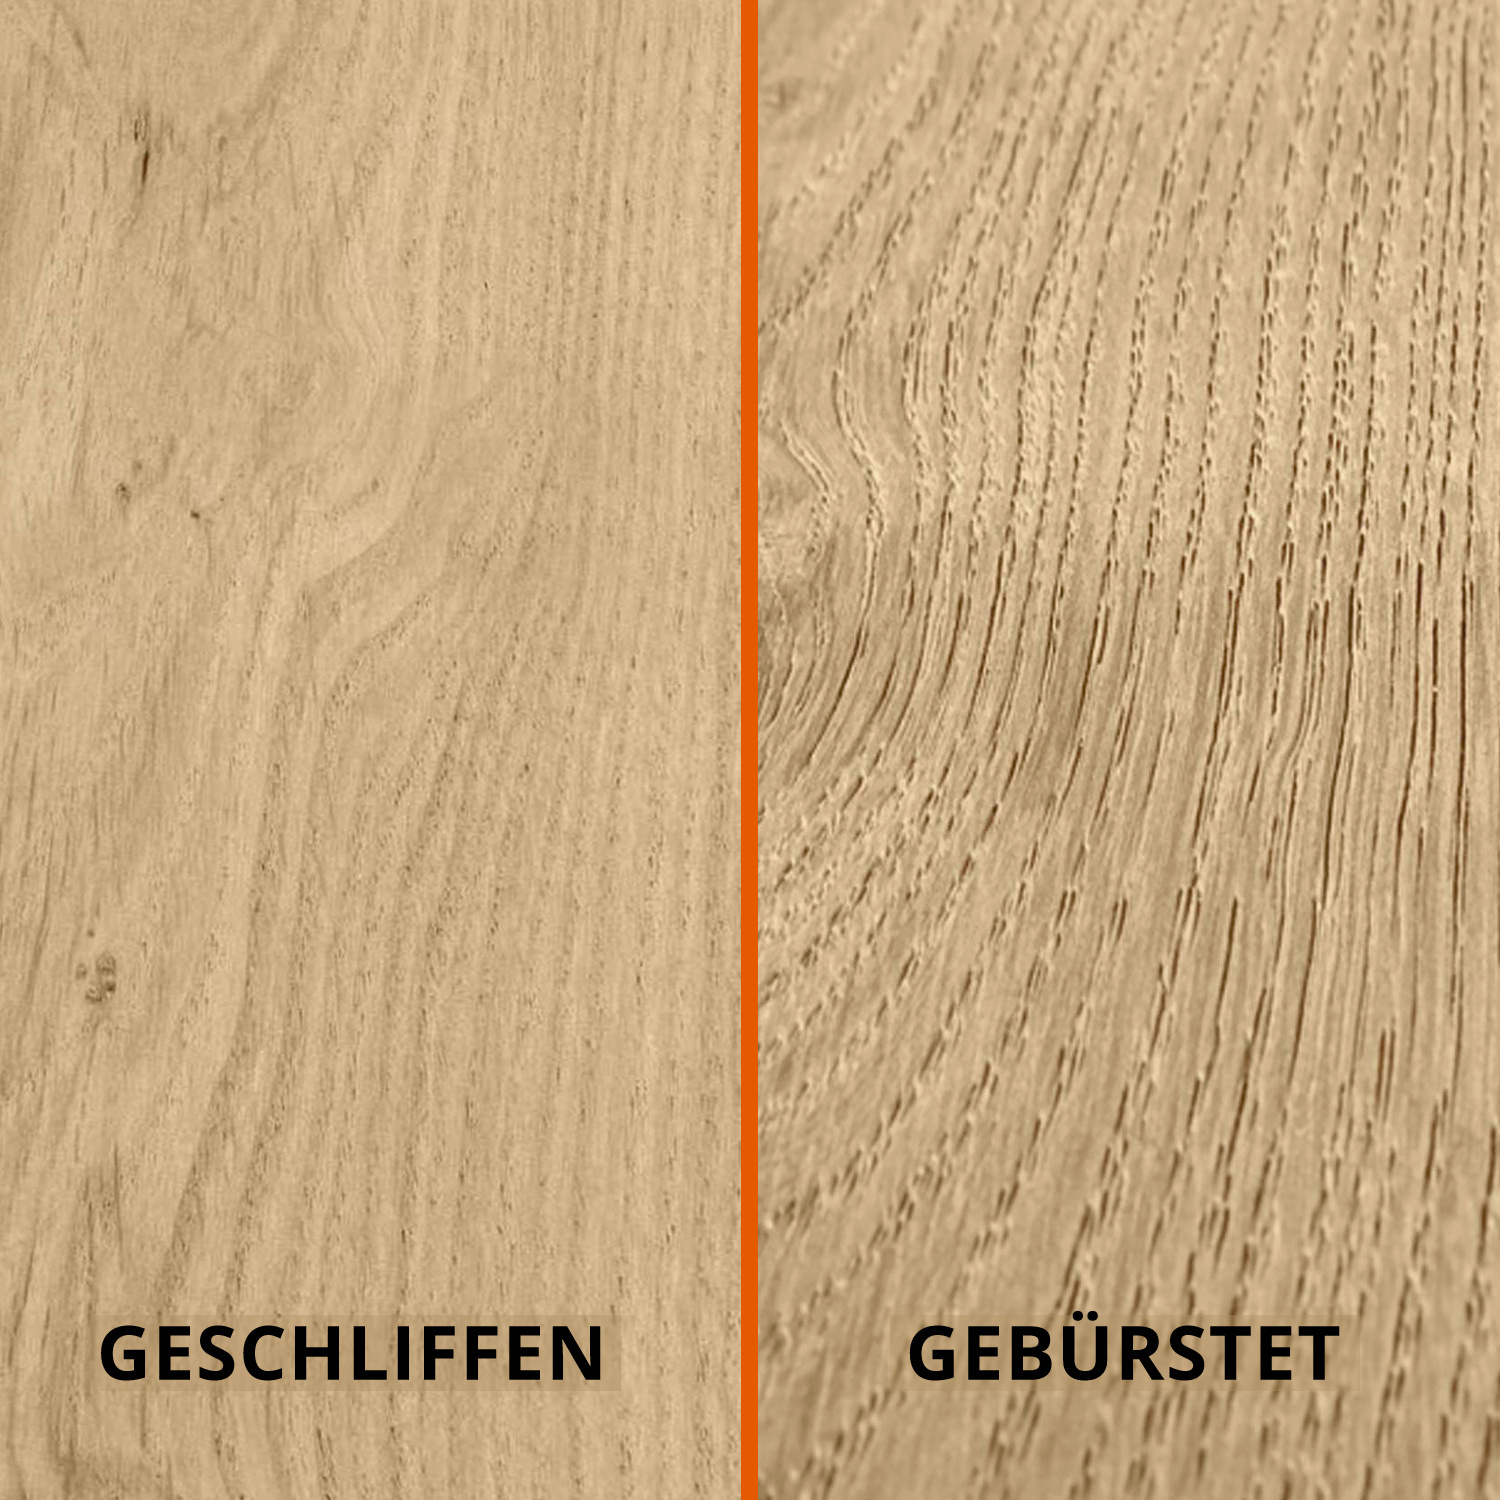  Tischplatte Eiche oval - 2,5 cm dick - Eichenholz A-Qualität - Ellipse Eiche Tischplatte massiv - HF 8-12%